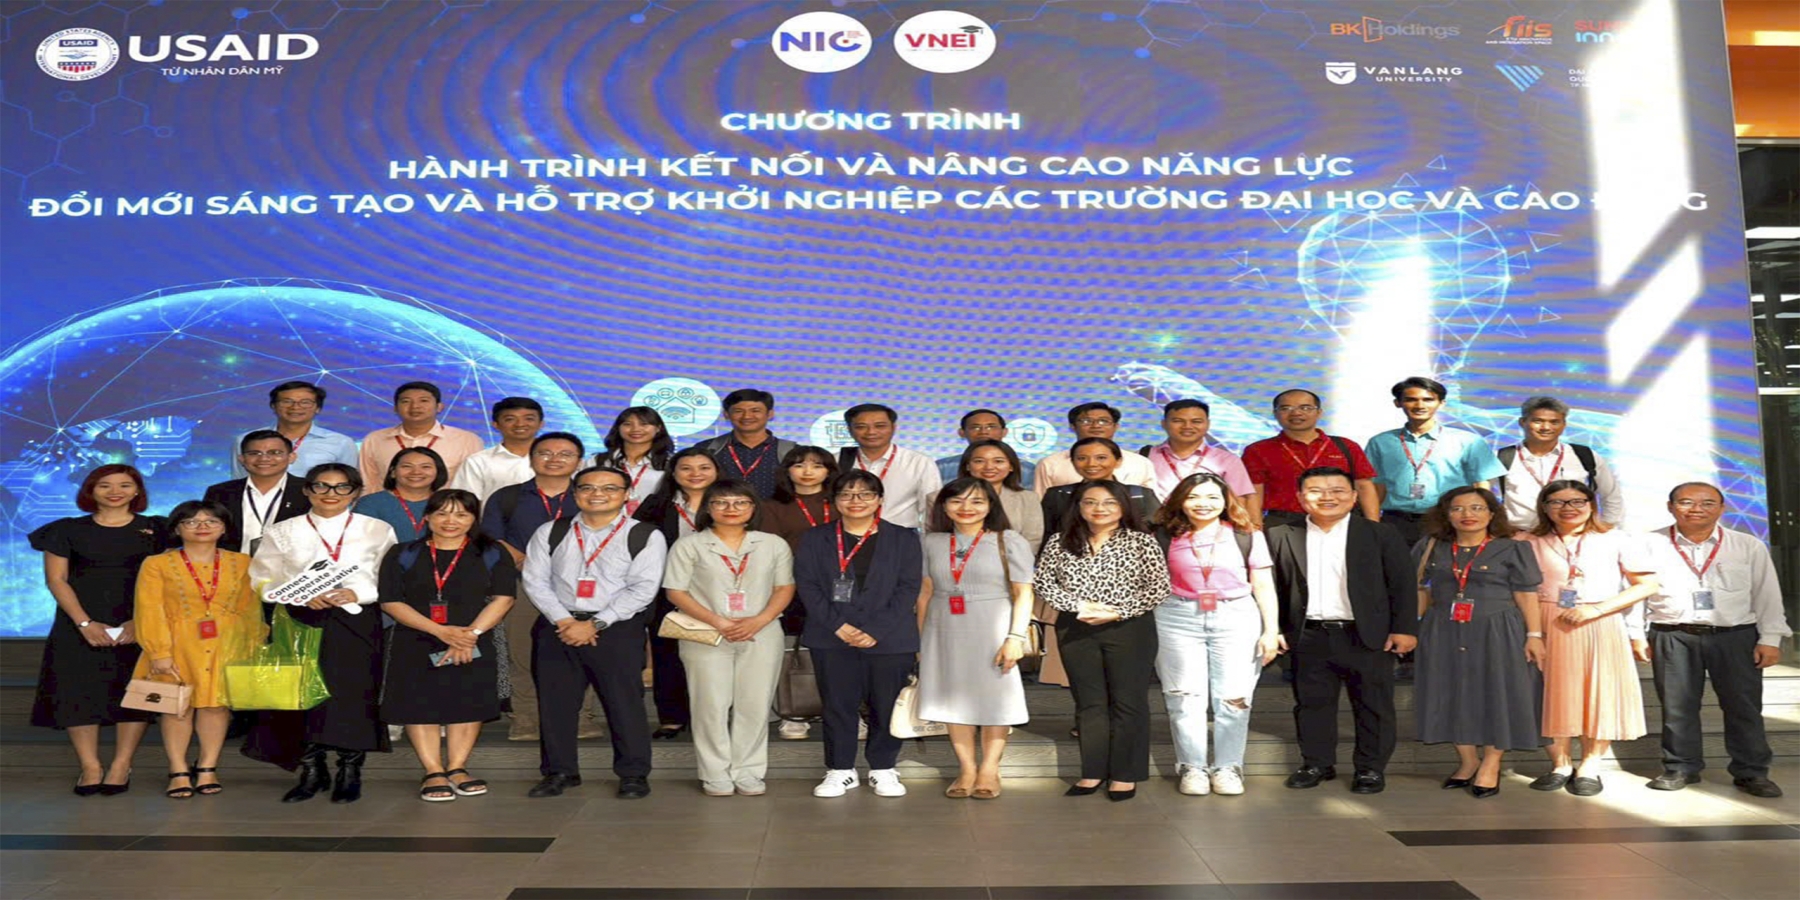 Trung tâm Ứng dụng công nghệ và Khởi nghiệp của Trường Đại học Kiên Giang trở thành thành viên Mạng lưới Trung tâm Đổi mới sáng tạo và khởi nghiệp các trường đại học, cao đẳng tại Việt Nam